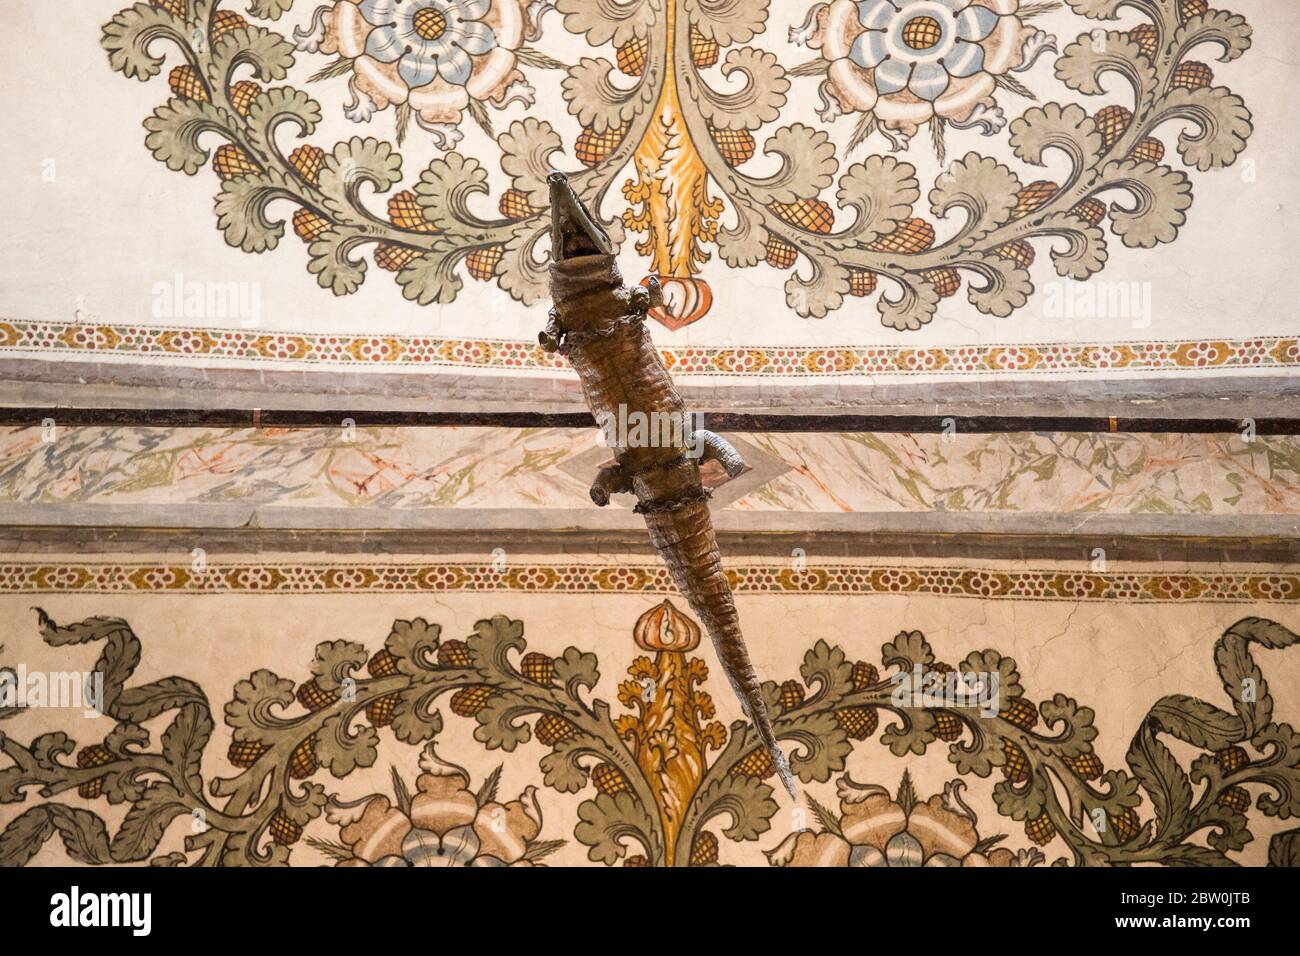 Le crocodile suspendu au plafond dans le sanctuaire de Santa Maria delle Grazie, Curtatone, province de Mantoue, Italie. L'animal en peluche est le souper Banque D'Images